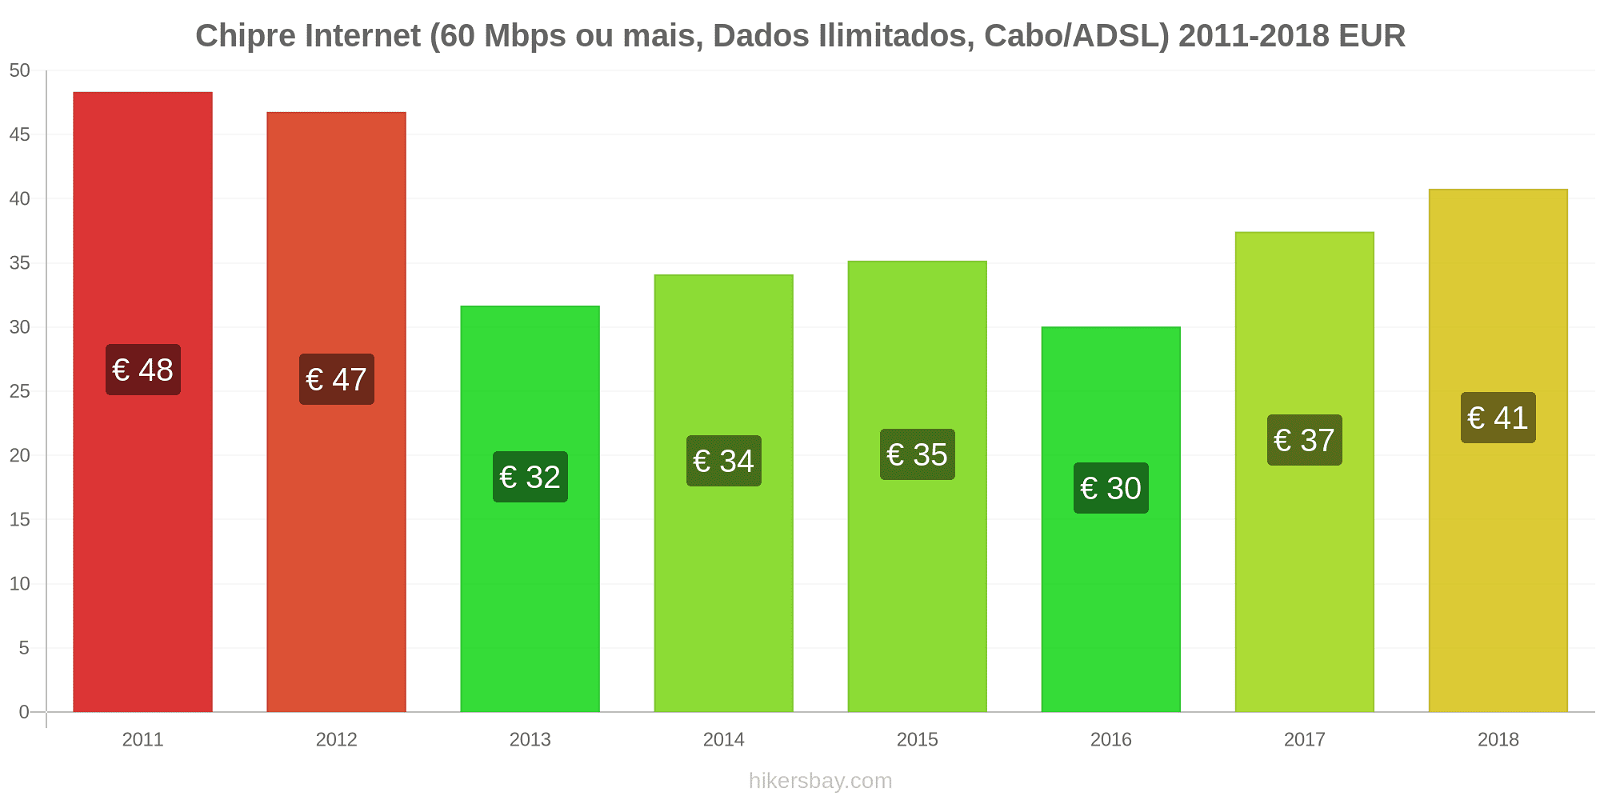 Chipre mudanças de preços Internet (60 Mbps ou mais, dados ilimitados, cabo/ADSL) hikersbay.com